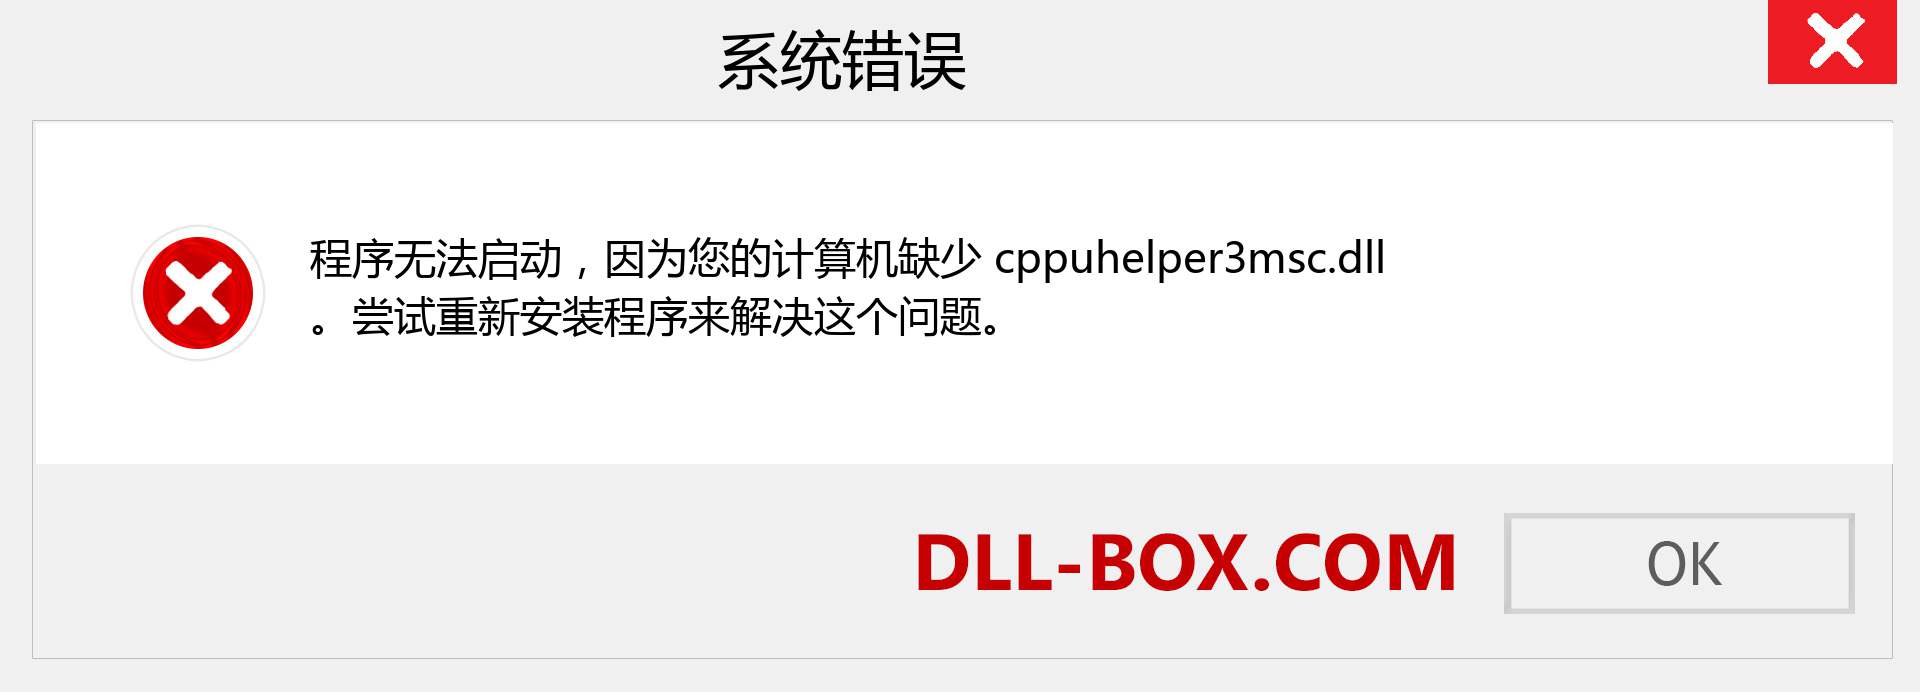 cppuhelper3msc.dll 文件丢失？。 适用于 Windows 7、8、10 的下载 - 修复 Windows、照片、图像上的 cppuhelper3msc dll 丢失错误